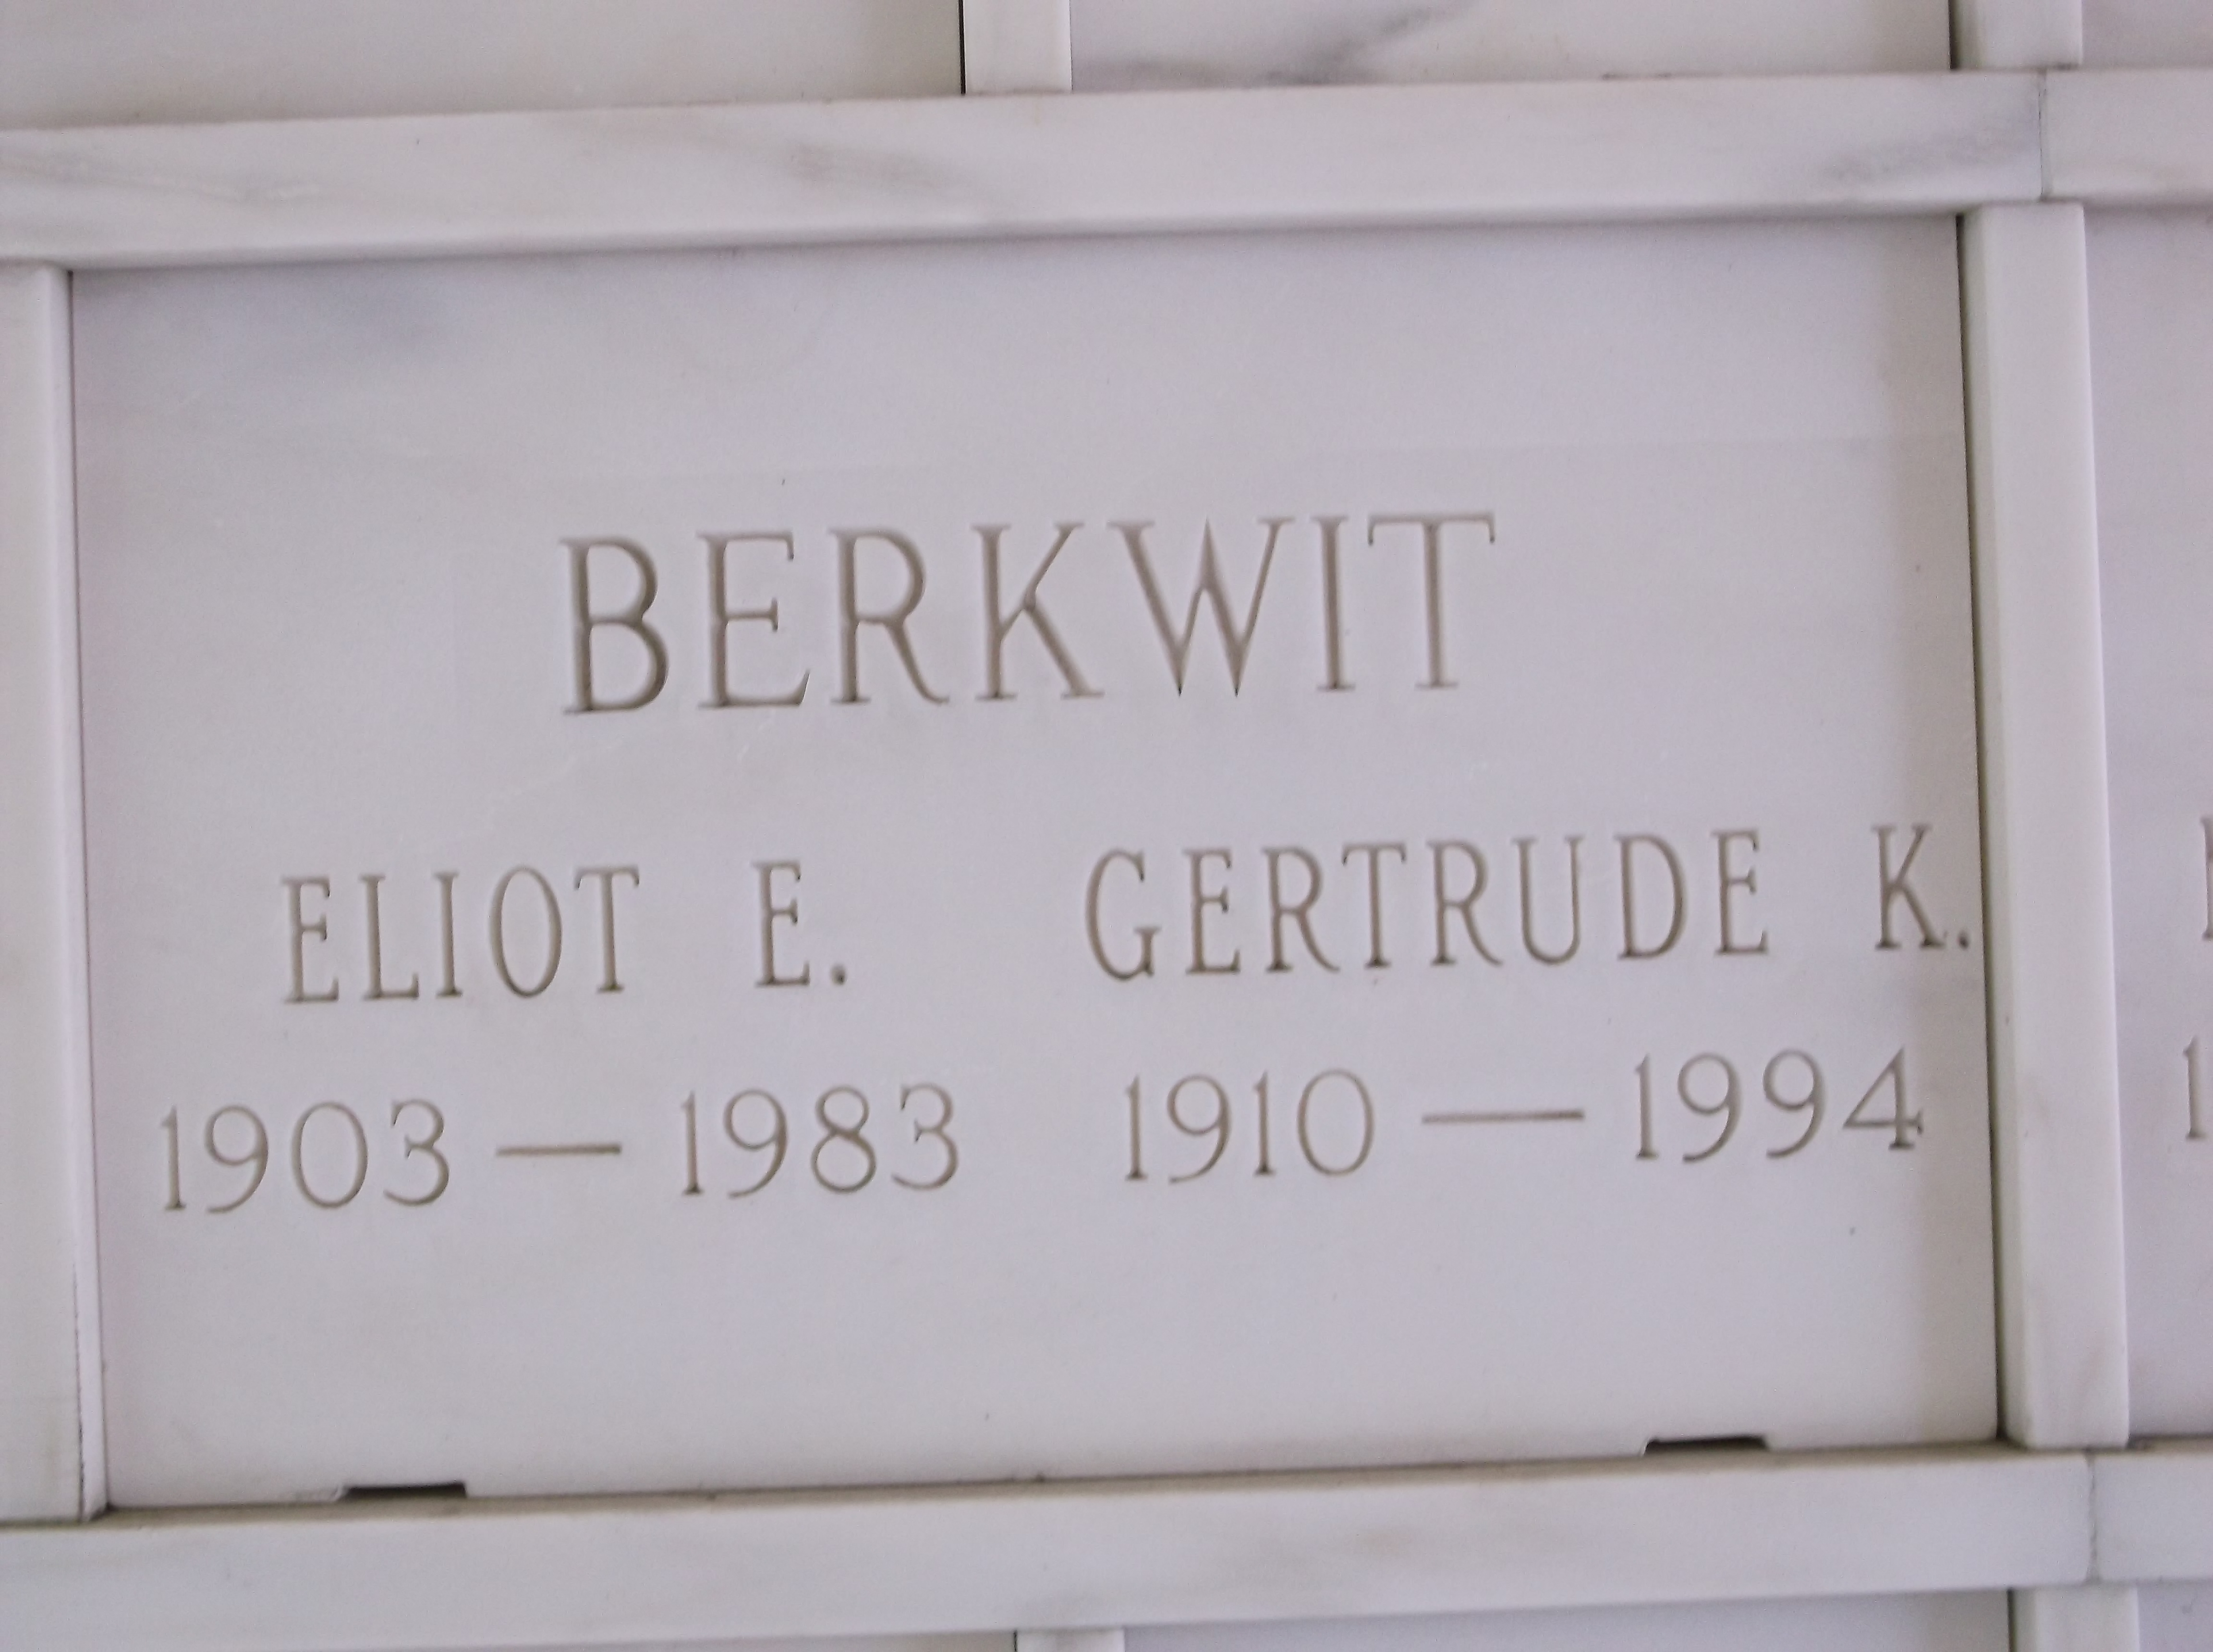 Gertrude K Berkwit